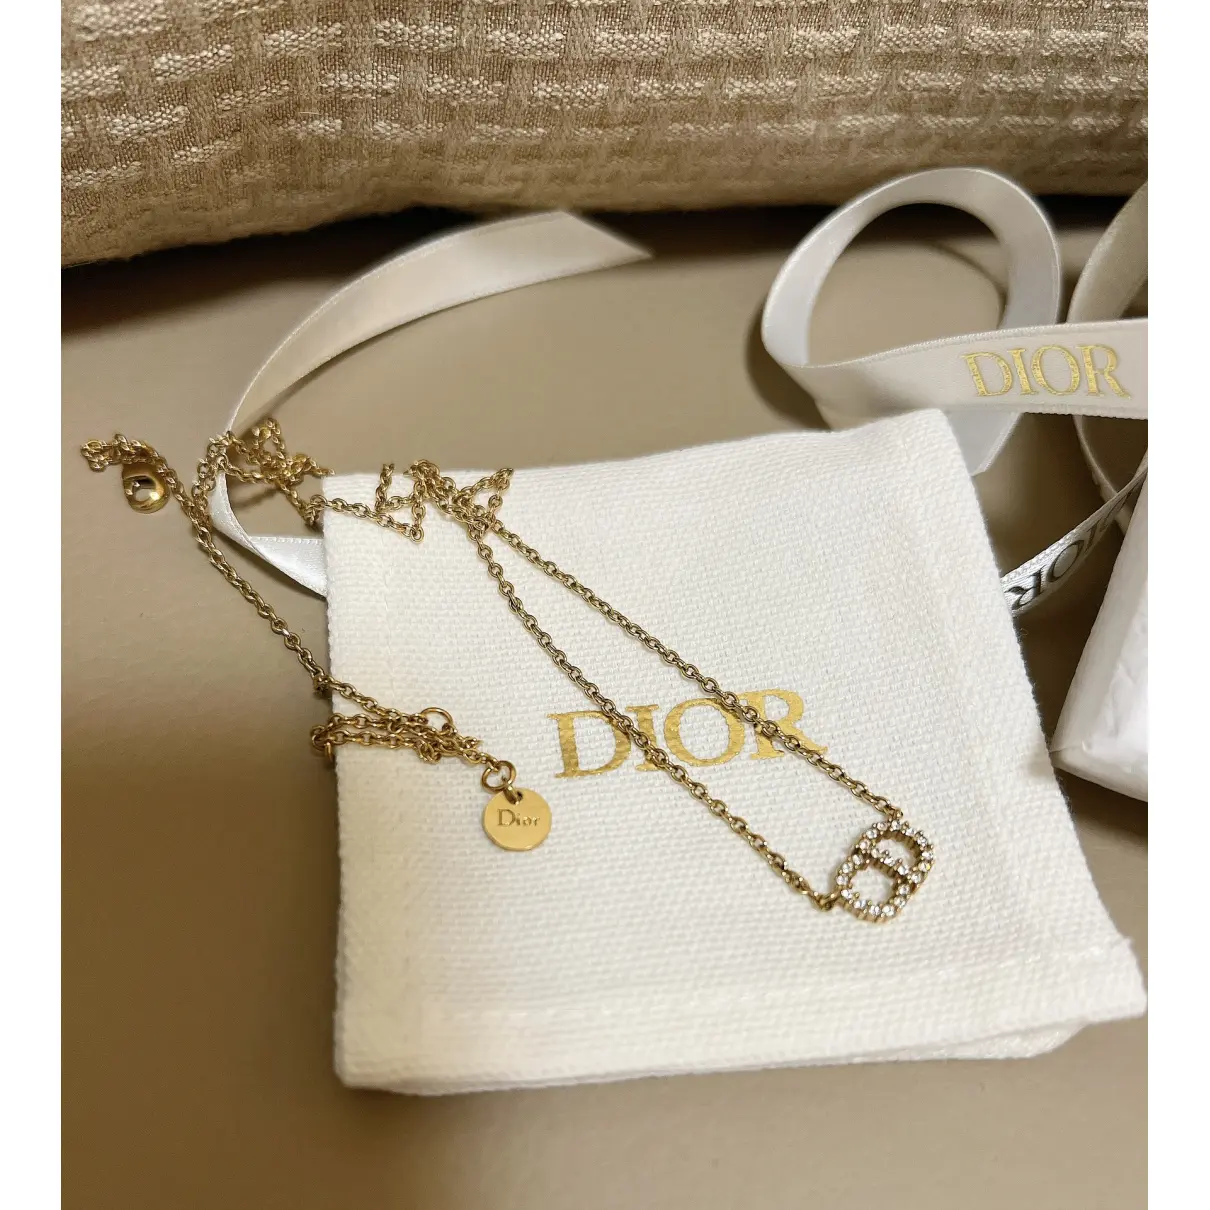 Buy Dior Bracelet online